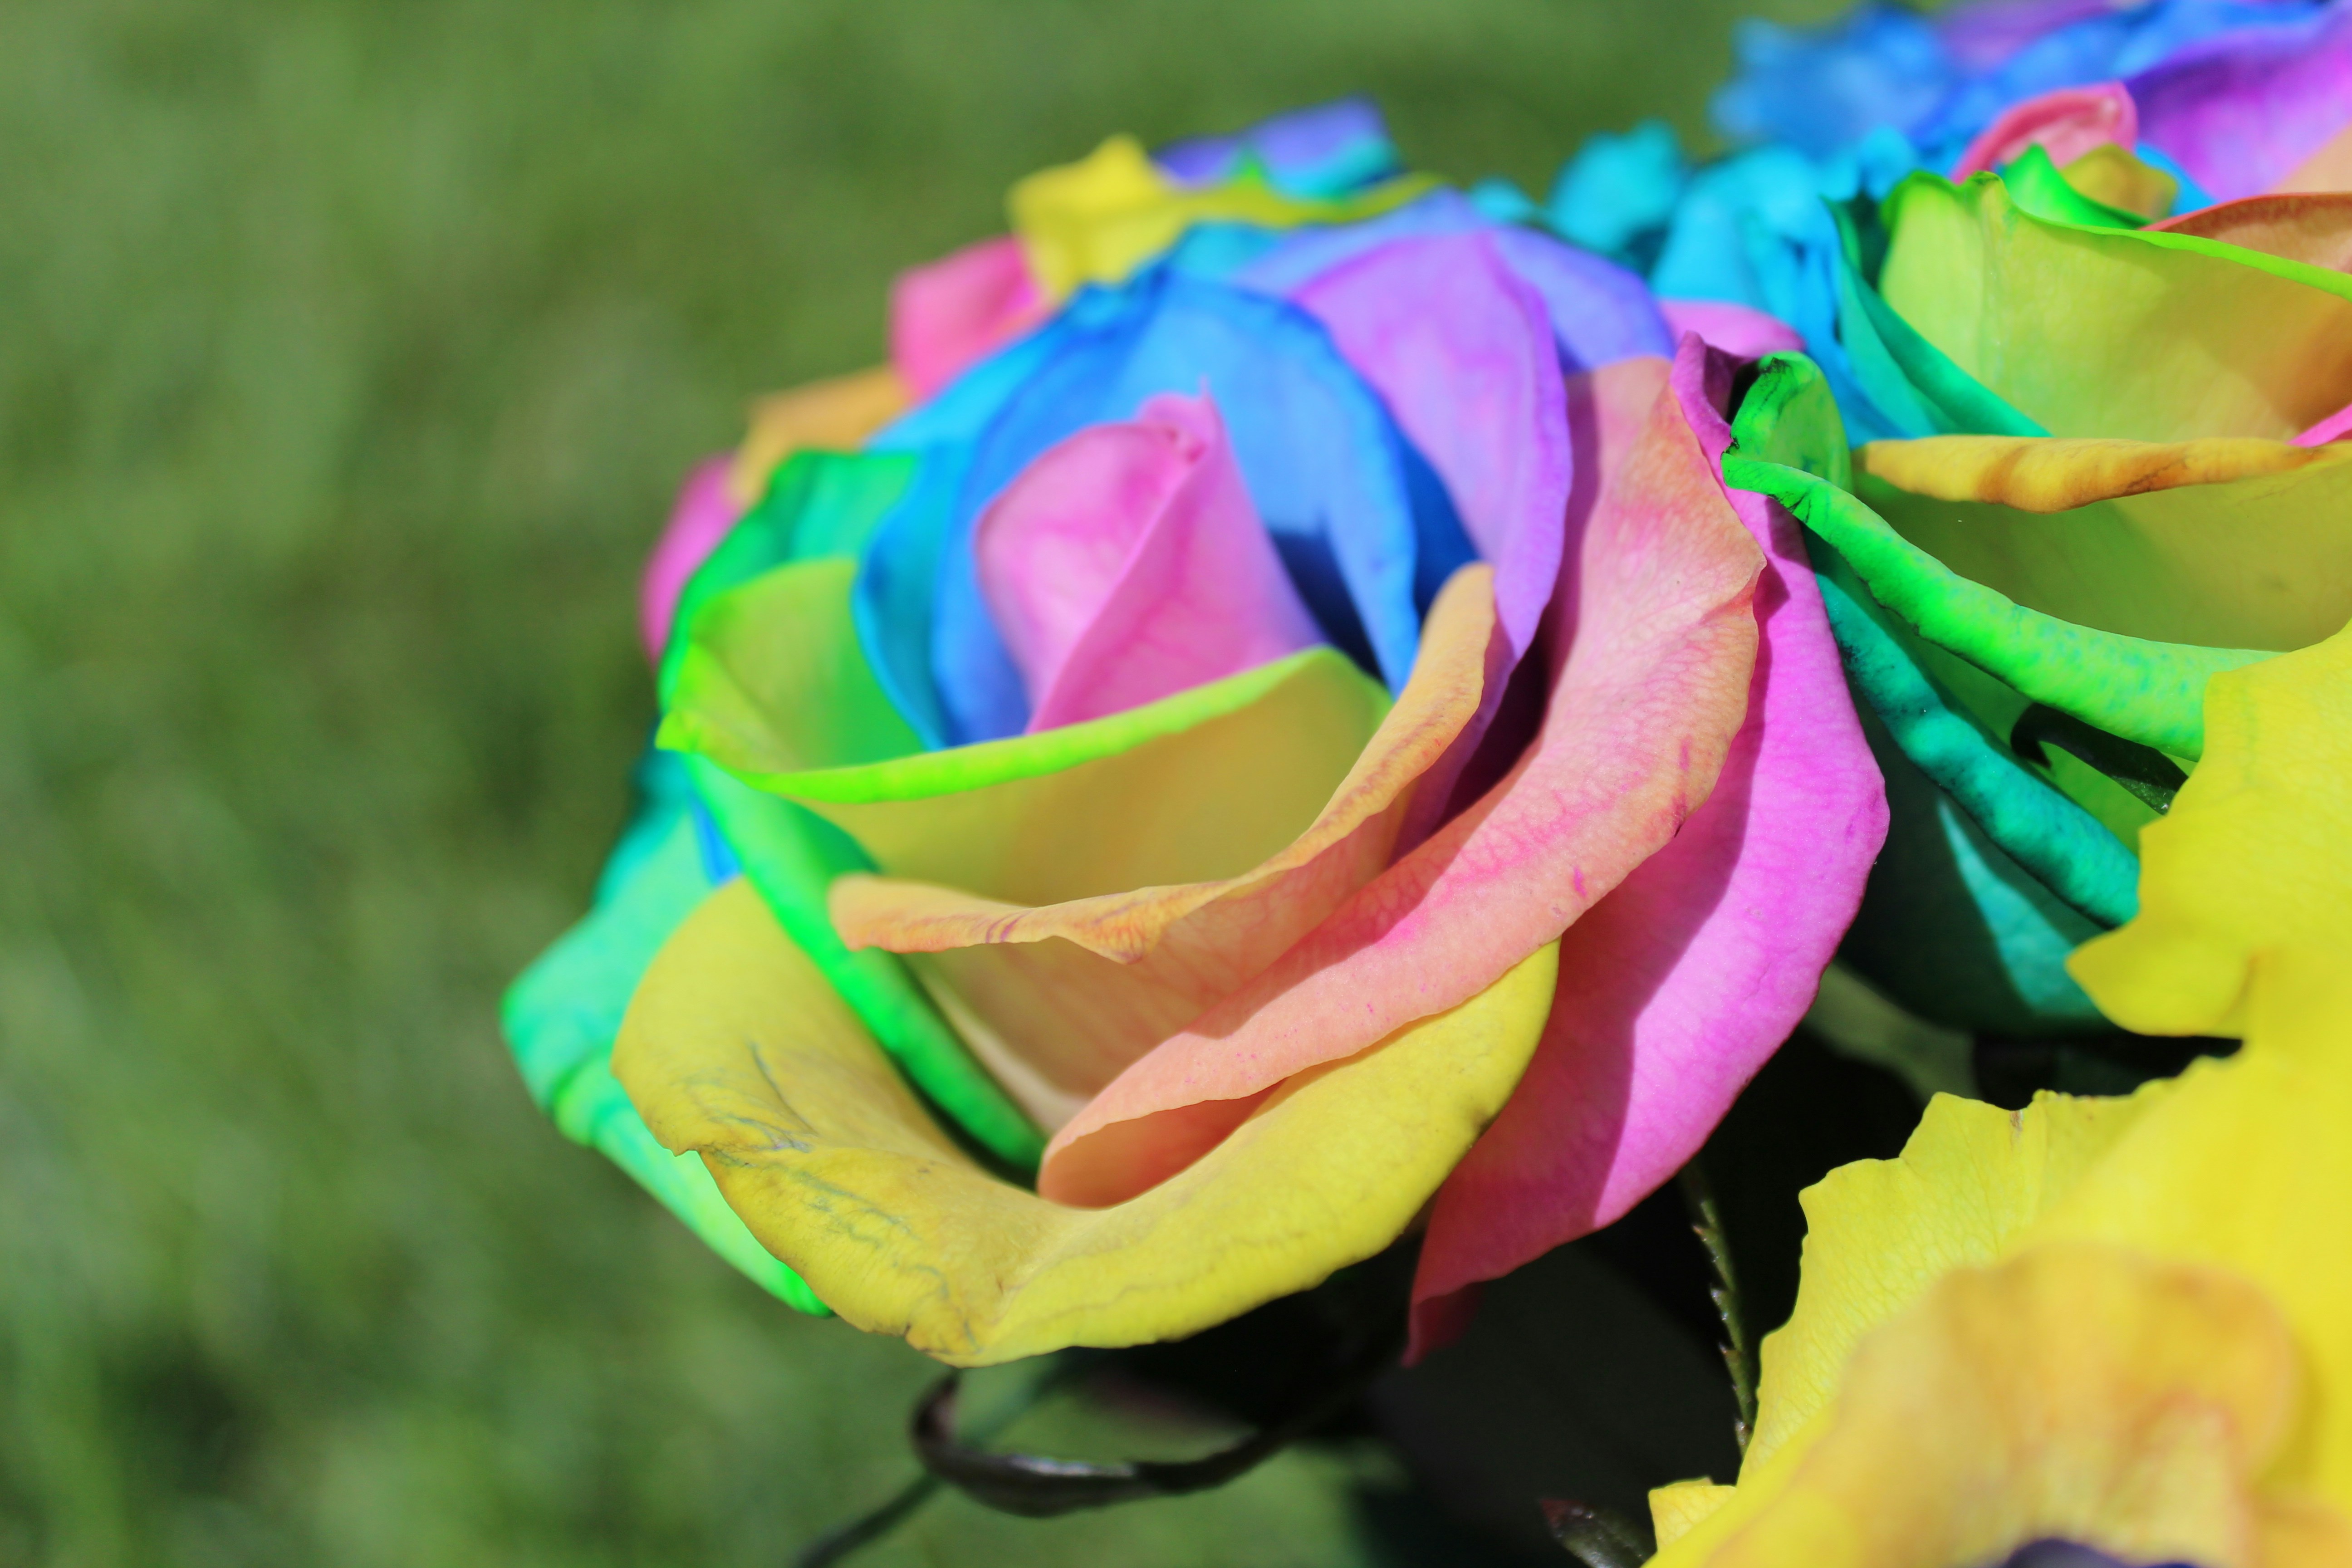 kolaidascope roses, tie dye roses, colorful roses